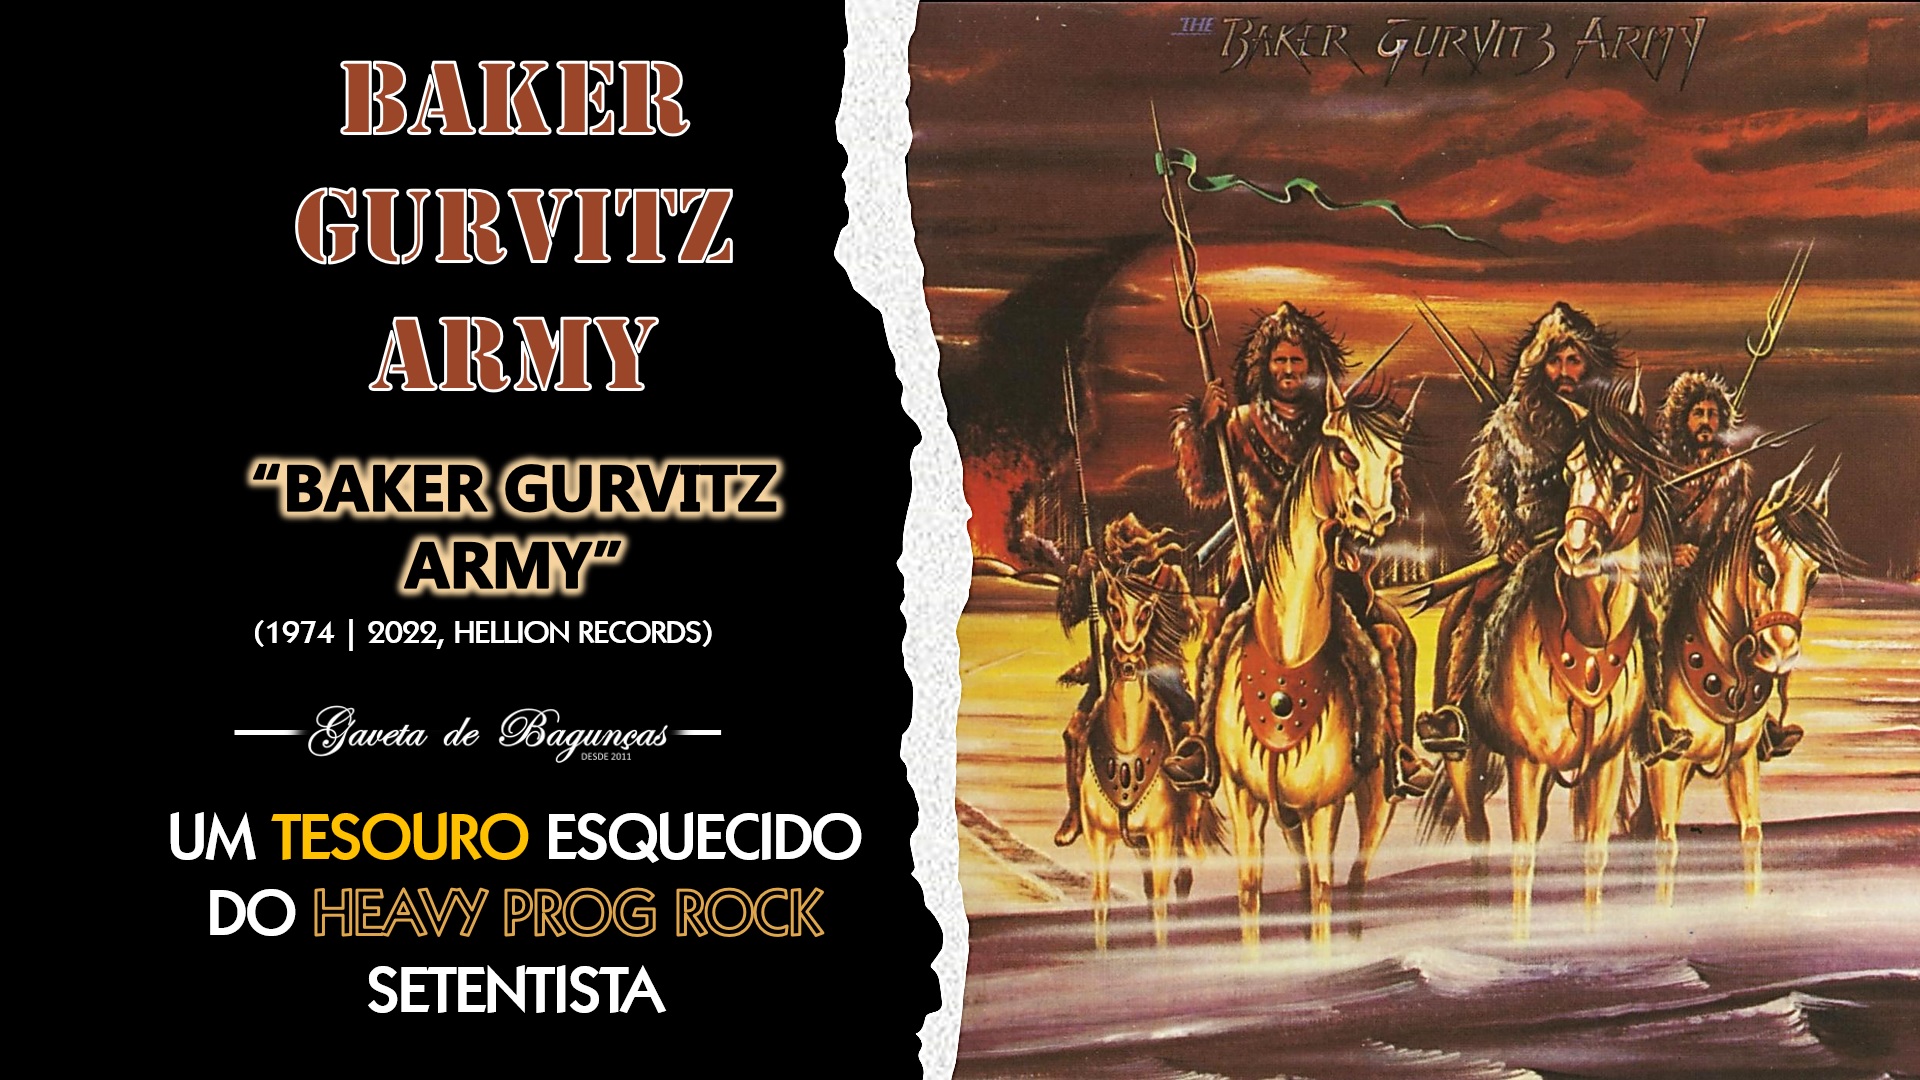 Se você é fã de heavy rock com toque clássico e progressivo, não vai querer perder o primeiro disco do Baker Gurvitz Army. Esta banda pode ter sido esquecida por muitos, mas sua música ainda impactante ainda hoje.